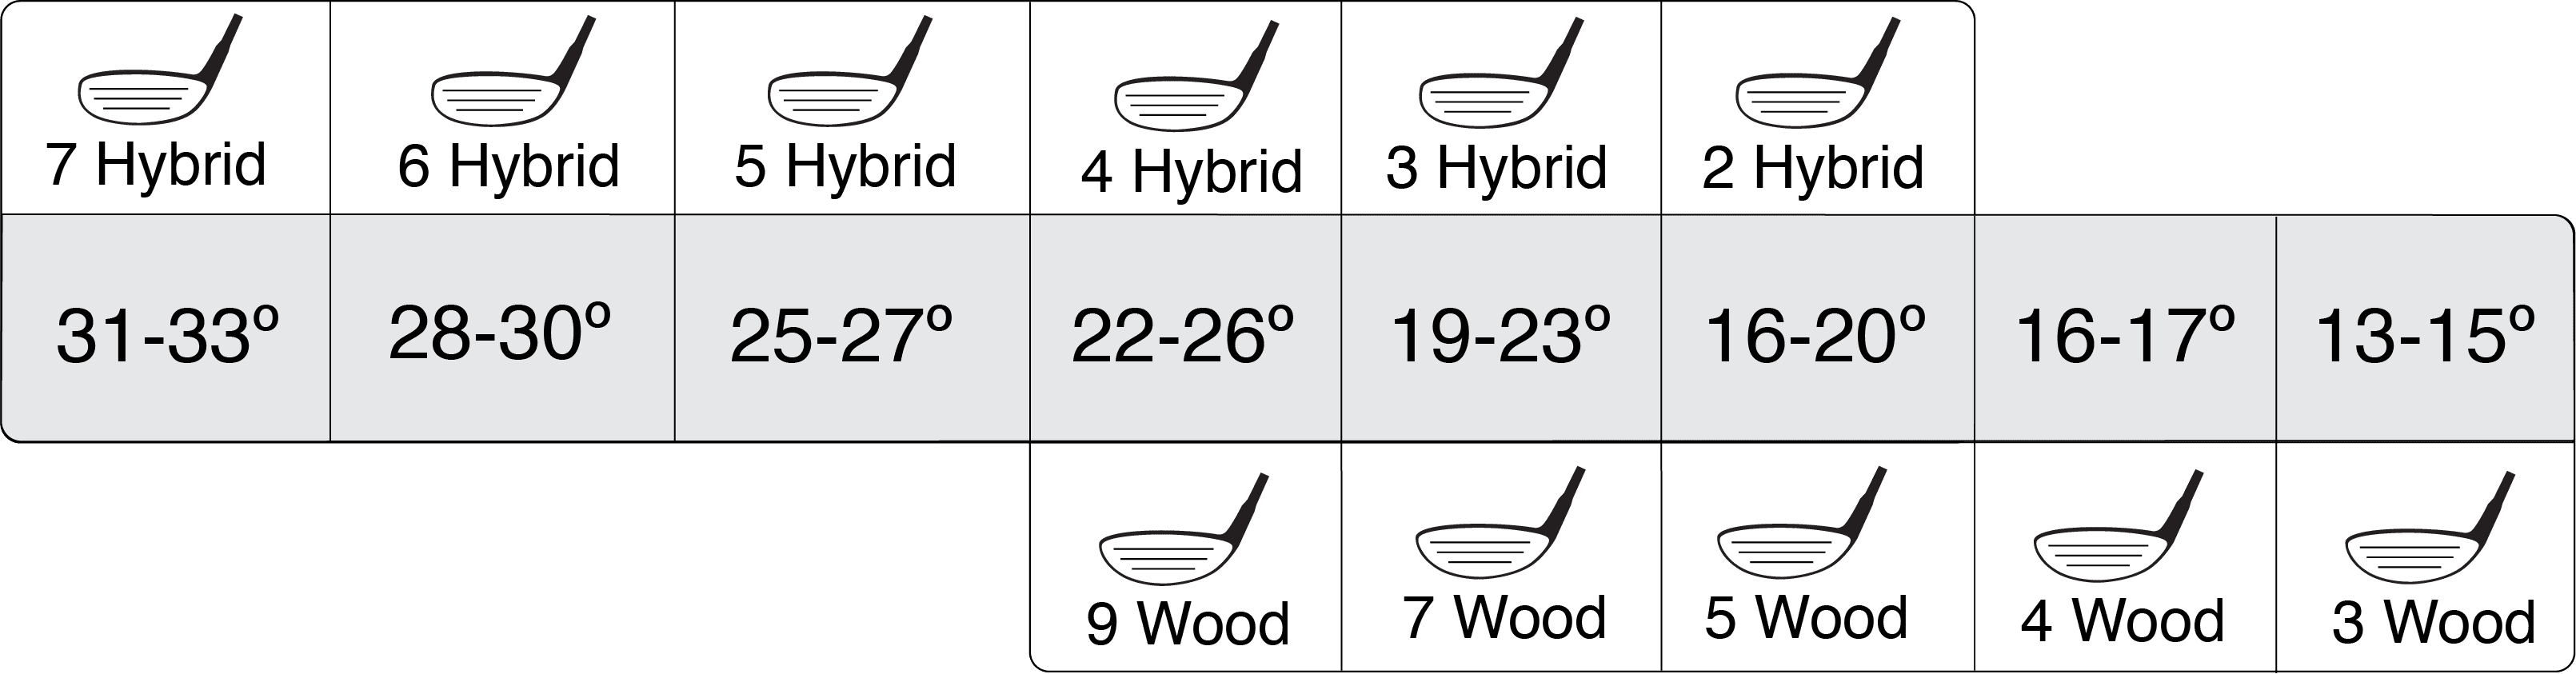 Golf Club Hybrid Loft Chart